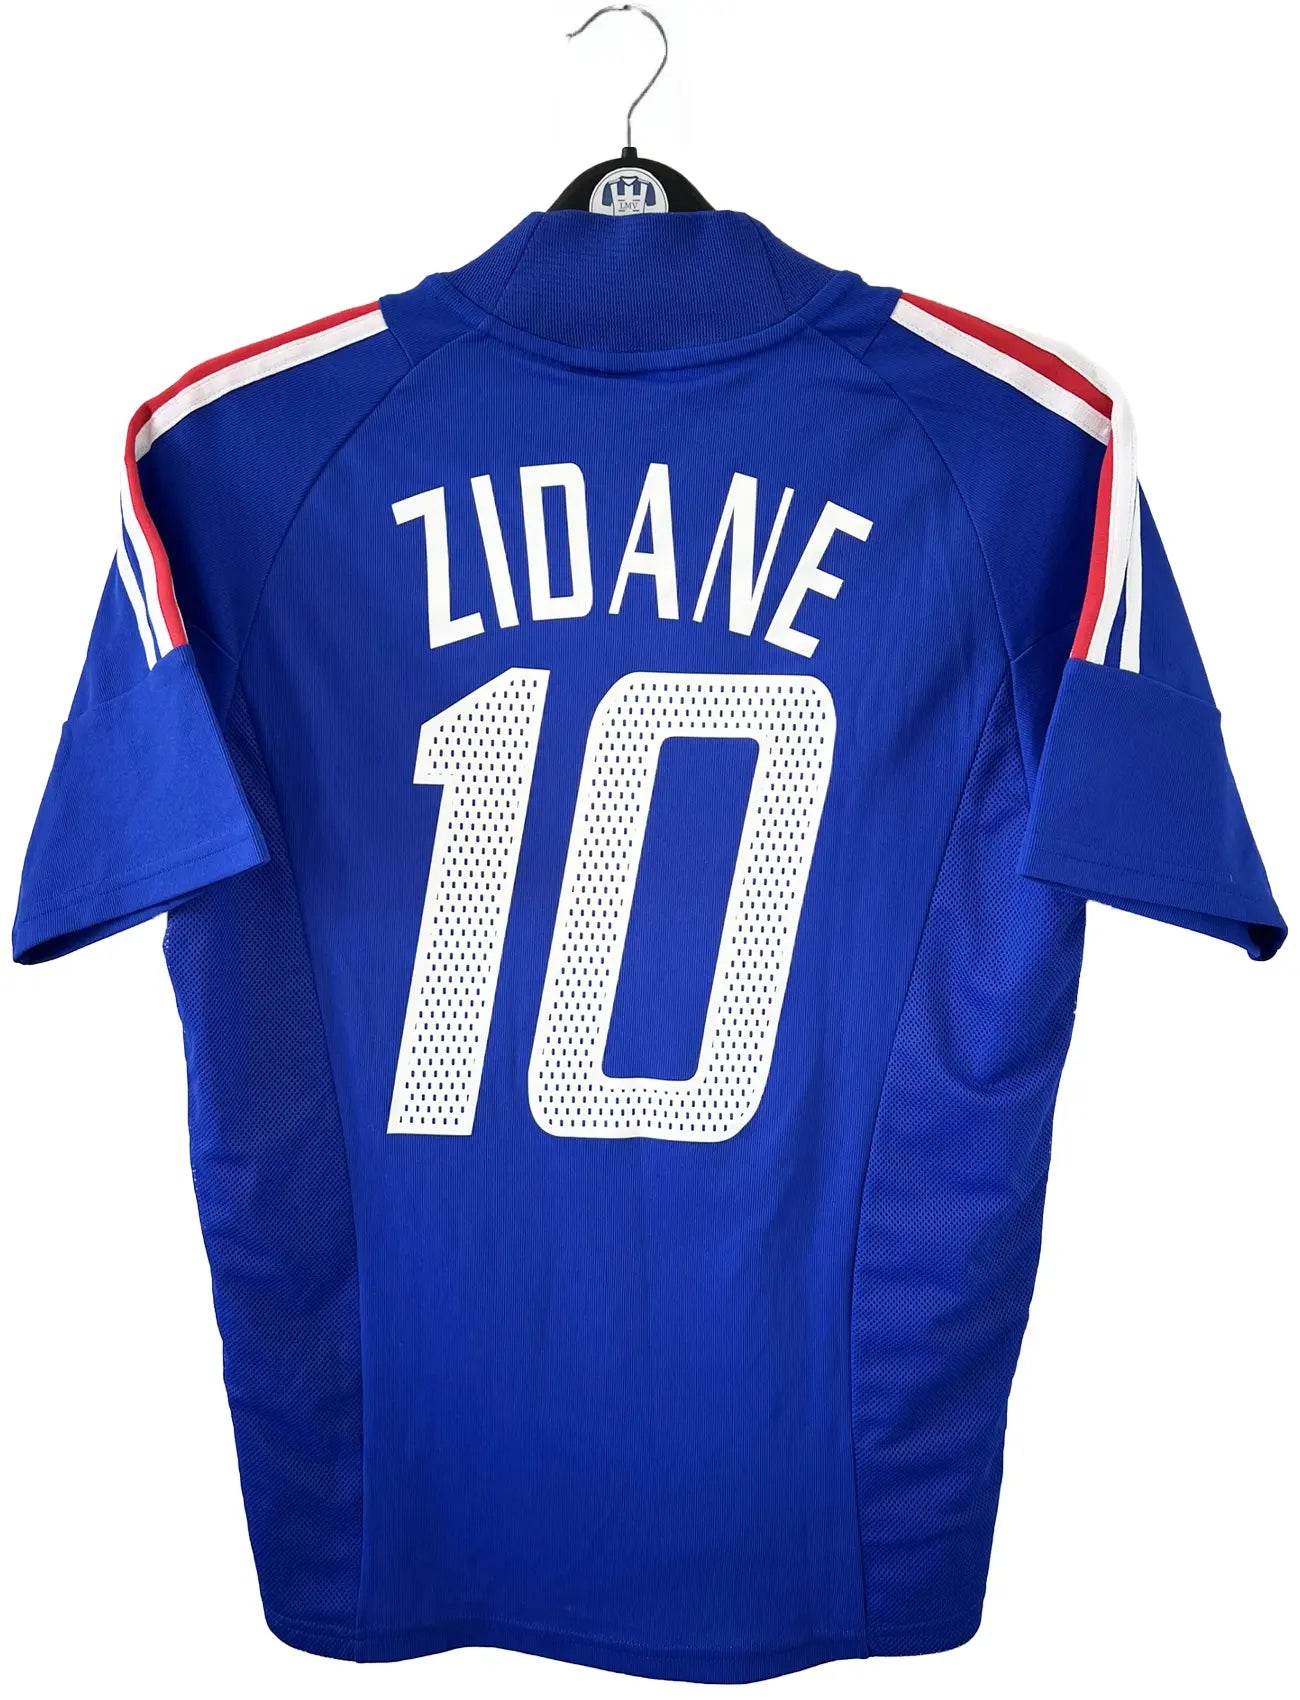 Maillot de foot vintage domicile de l'équipe de france 2002. Le maillot est de couleur bleu blanc et rouge. On peut retrouver l'équipementier adidas. Le maillot est floqué du numéro 10 Zinedine Zidane. Il s'agit d'un maillot authentique d'époque comportant les numéros 139531.